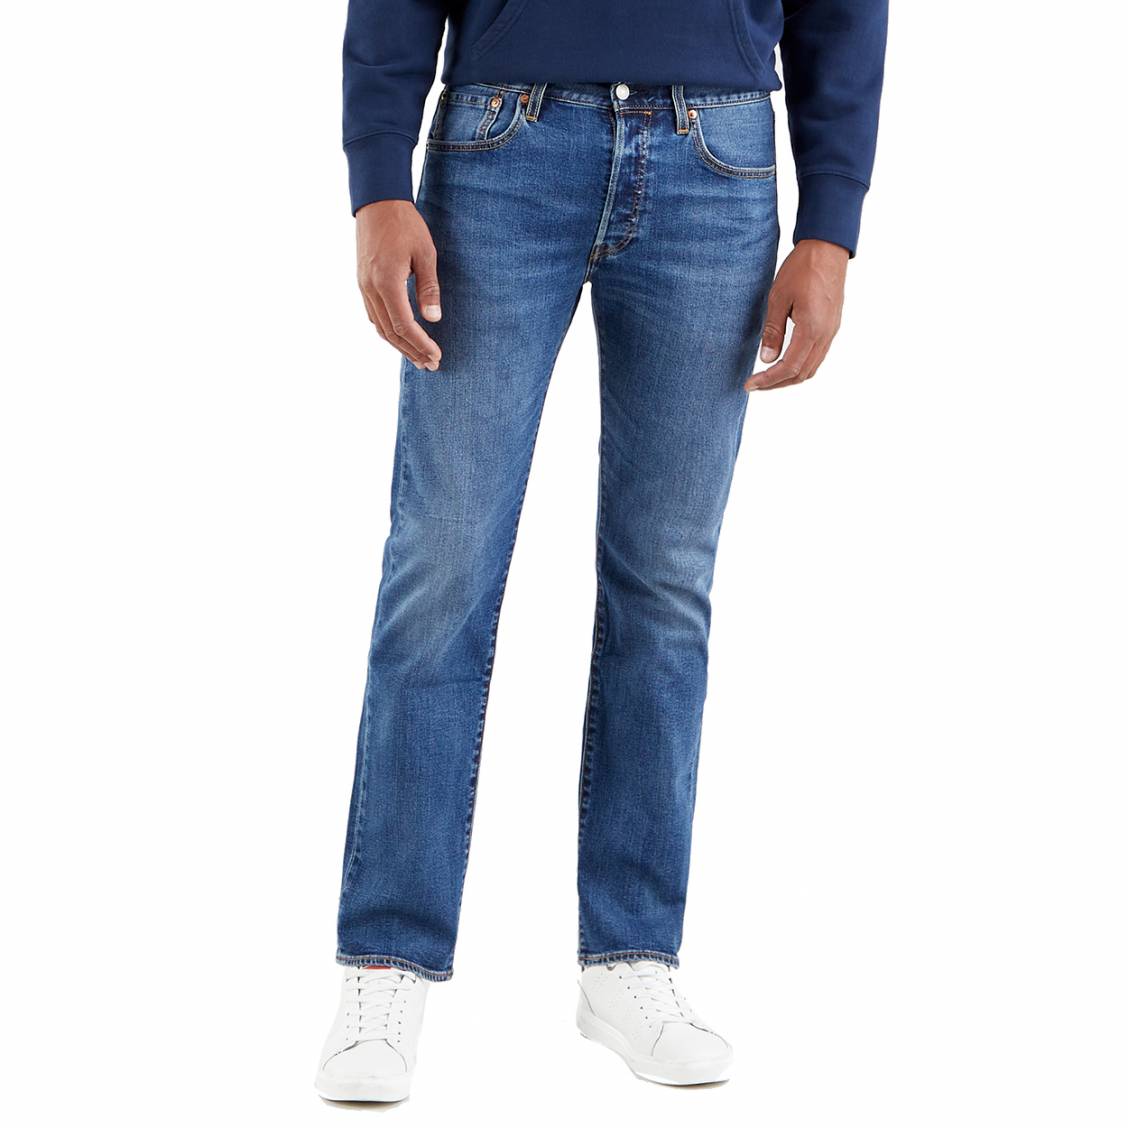 Vente > jeans levi's 501 homme délavé > en stock